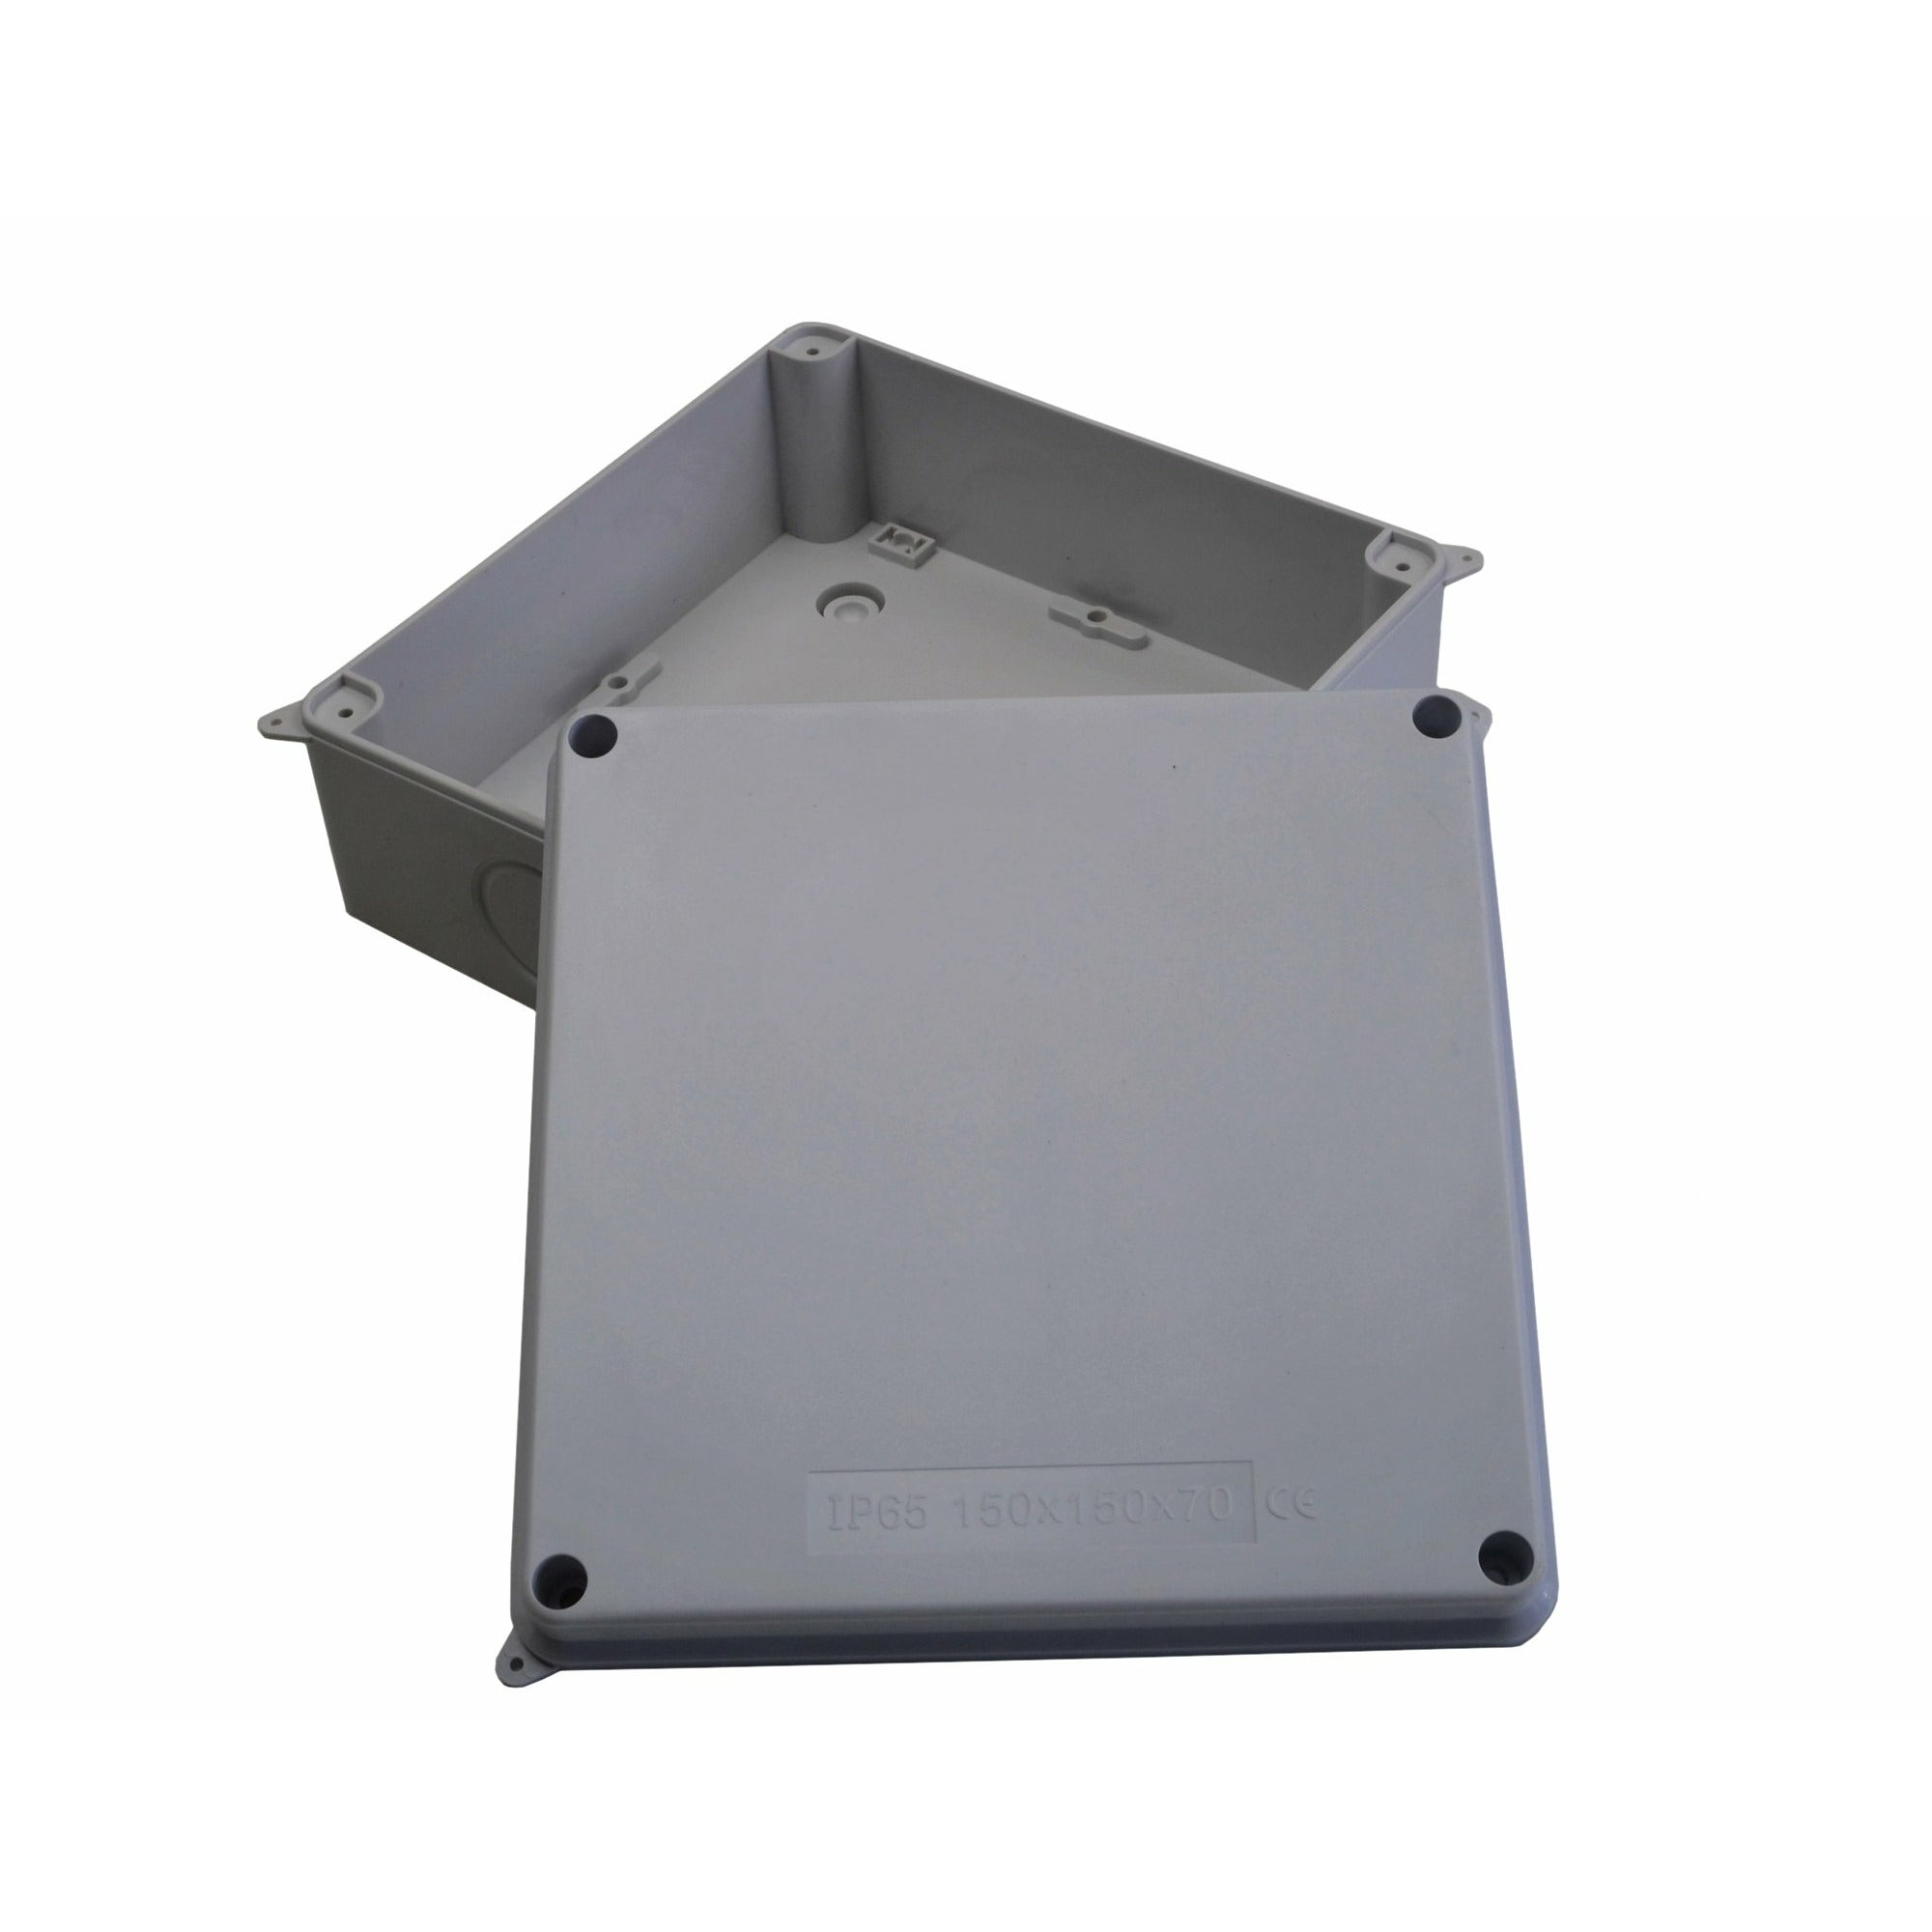 150x150x70 mm no grommet IP65 Waterproof Junction Box